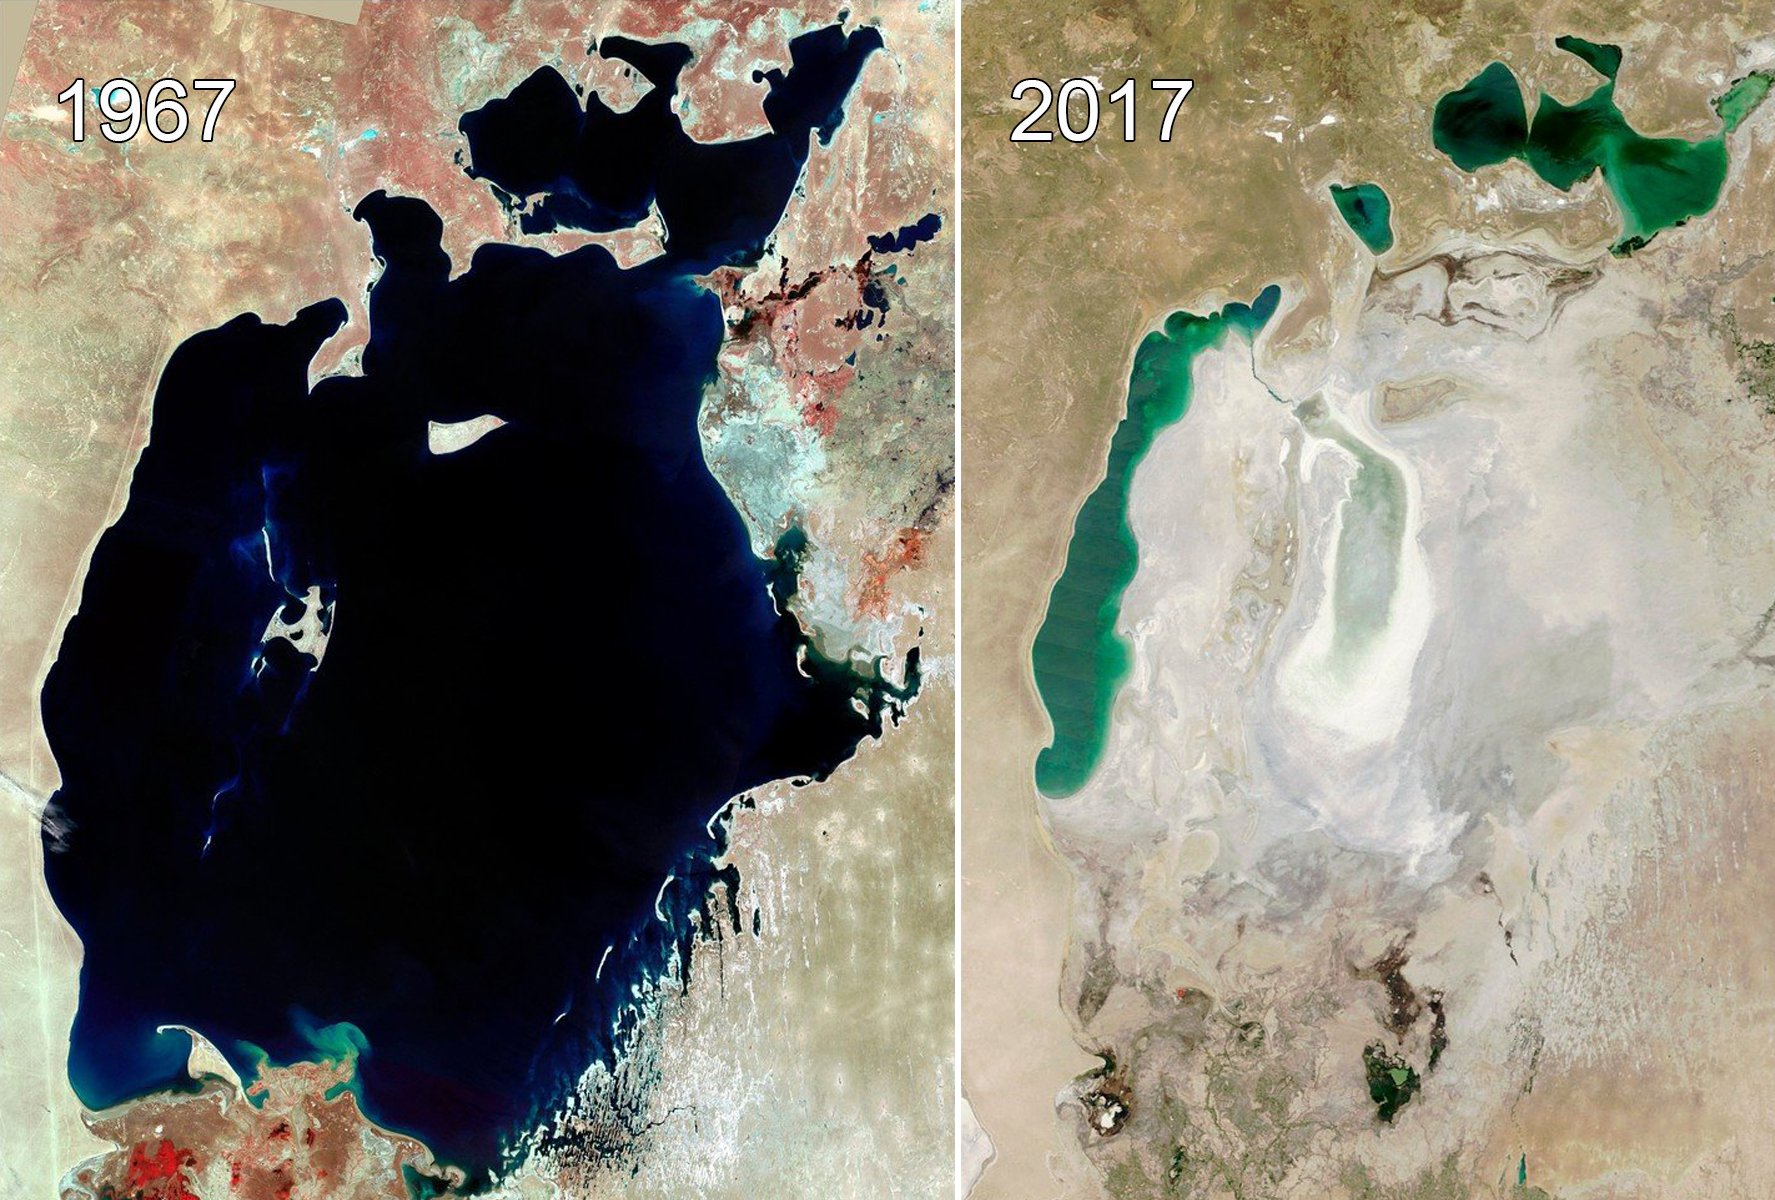 Фото аральского моря до и после высыхания